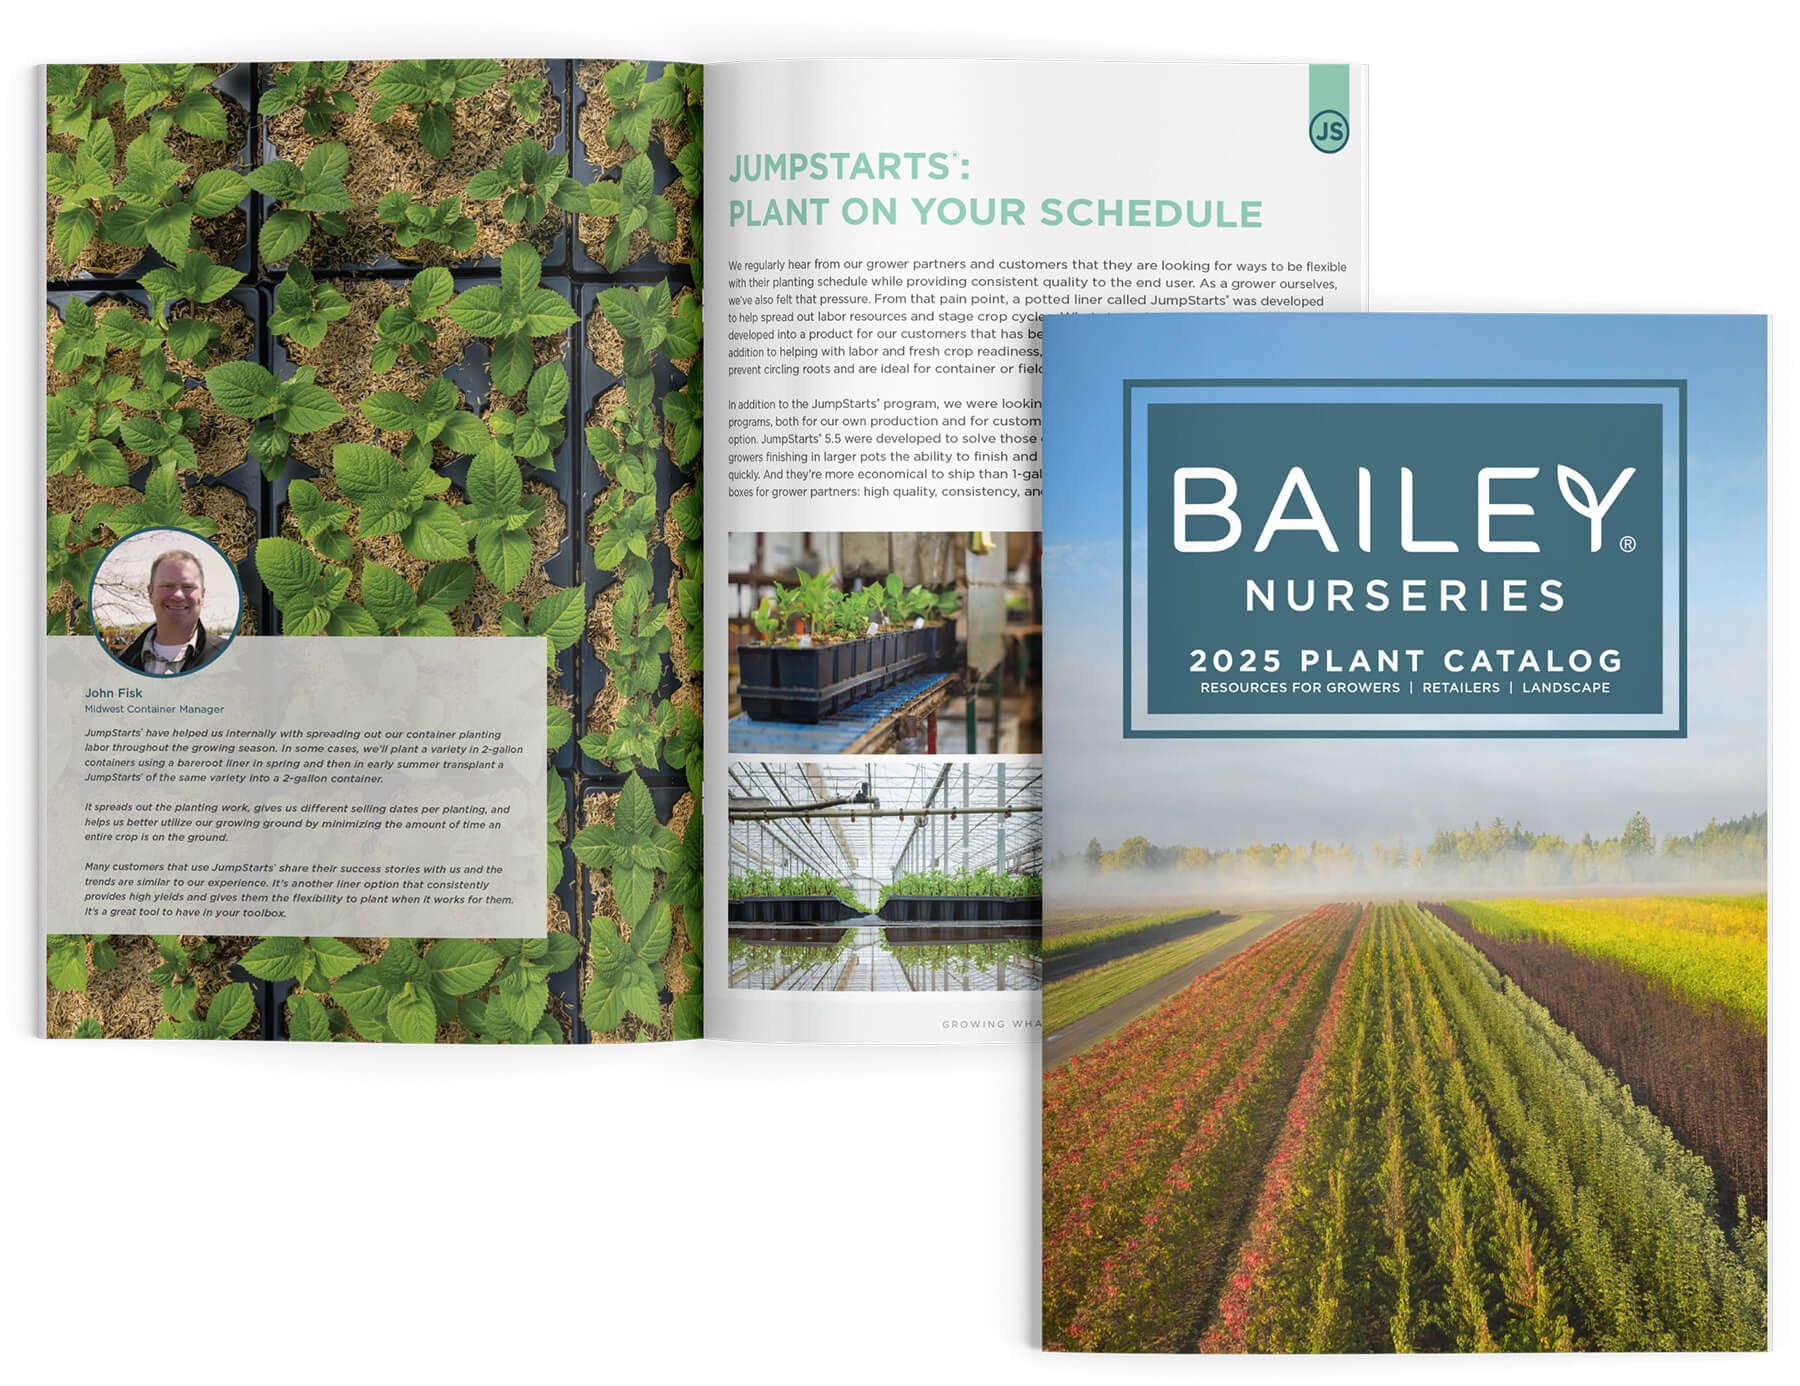 New Bailey Nurseries Catalog for 2025